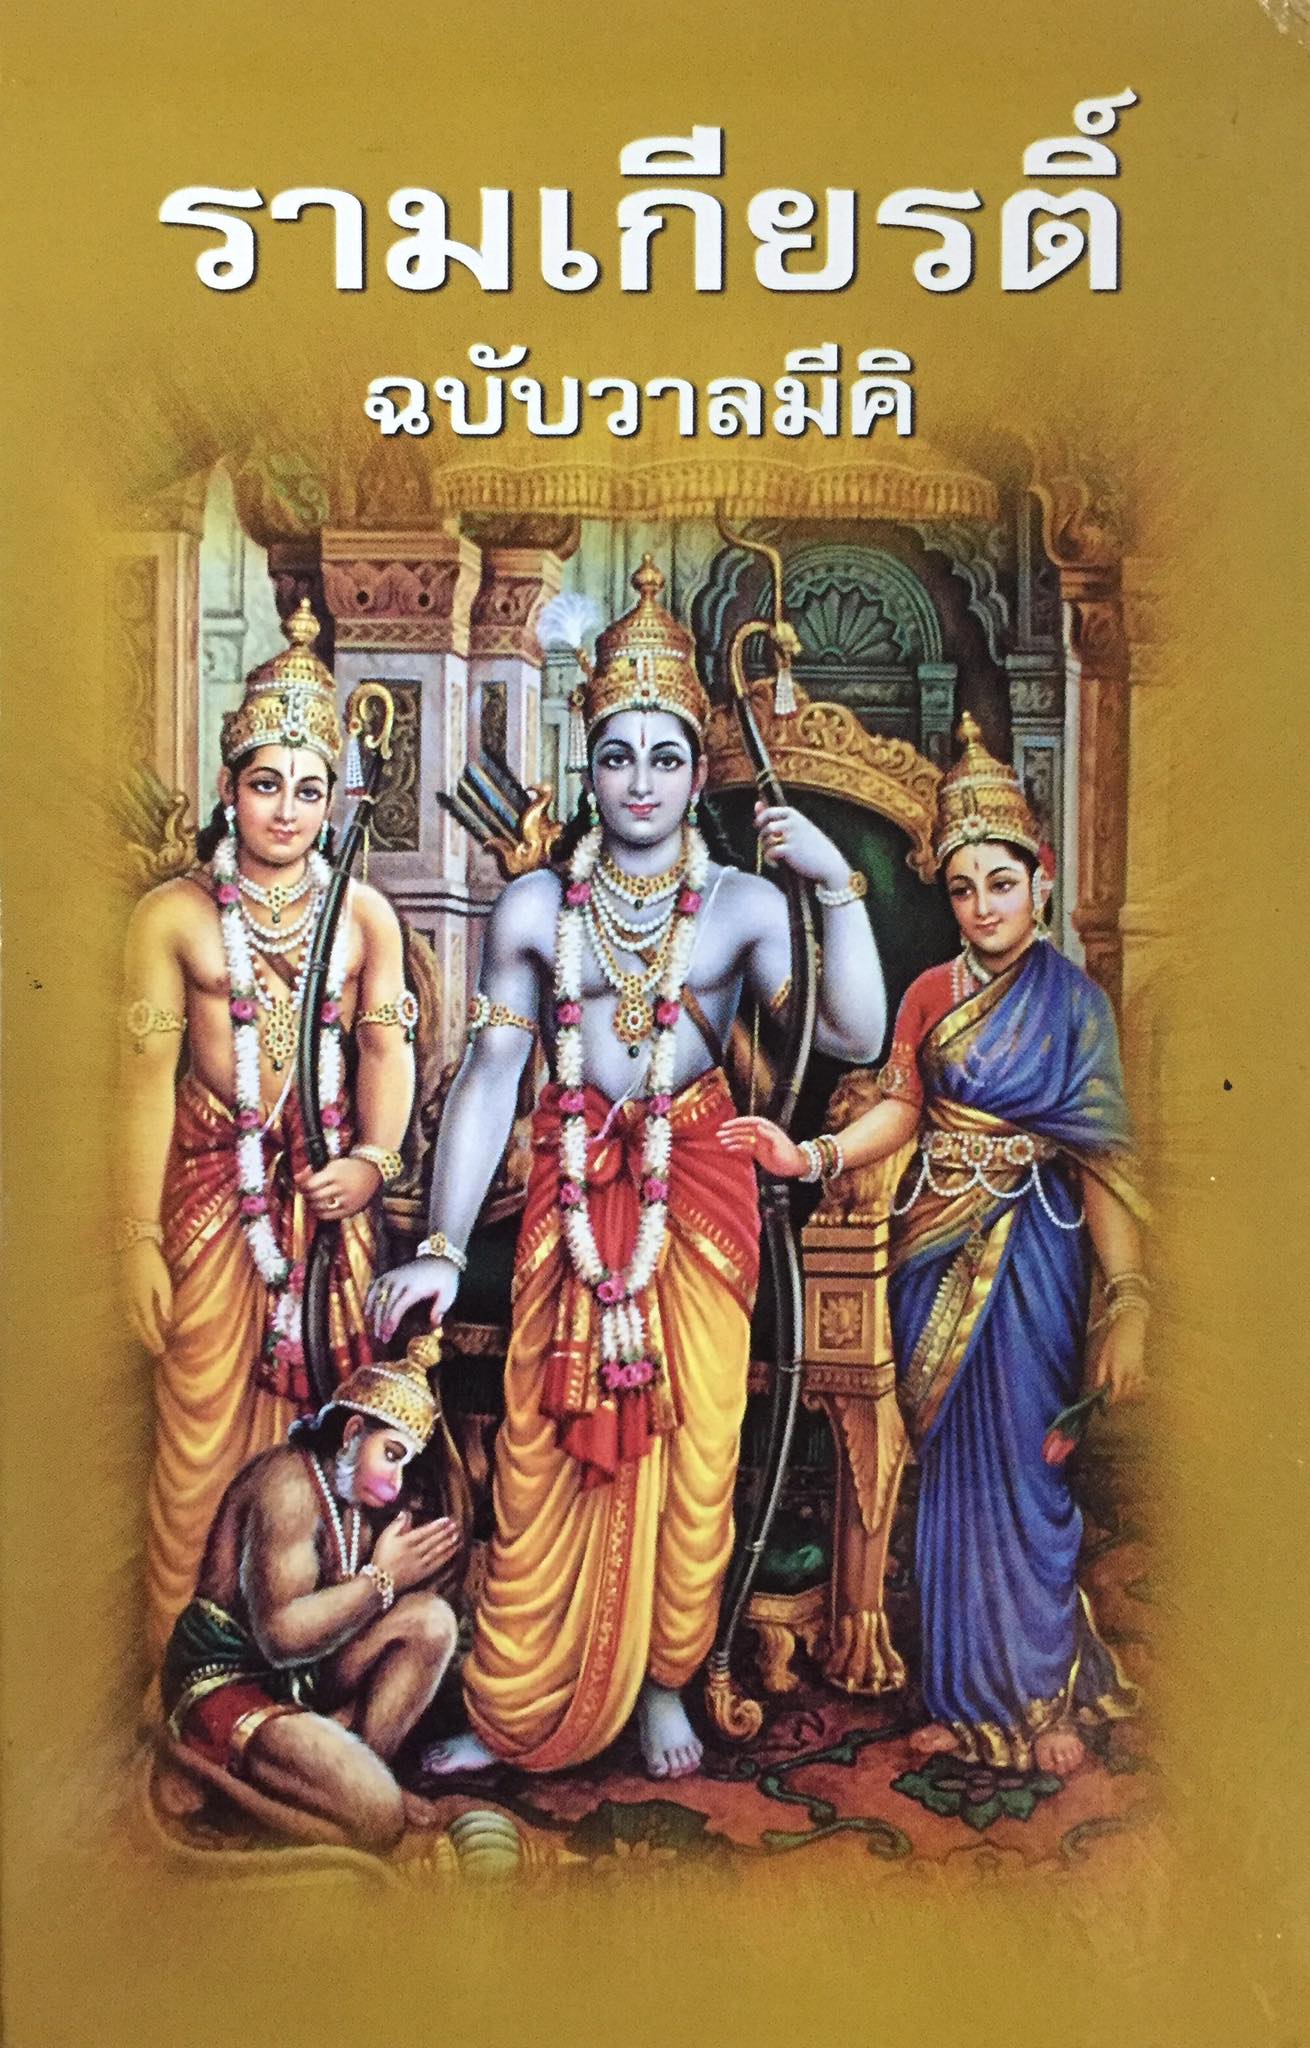 รามเกียรติ์ ฉบับวาลมีคิ  Ramayan In Thai  เรื่องราวลีลาของพระราม